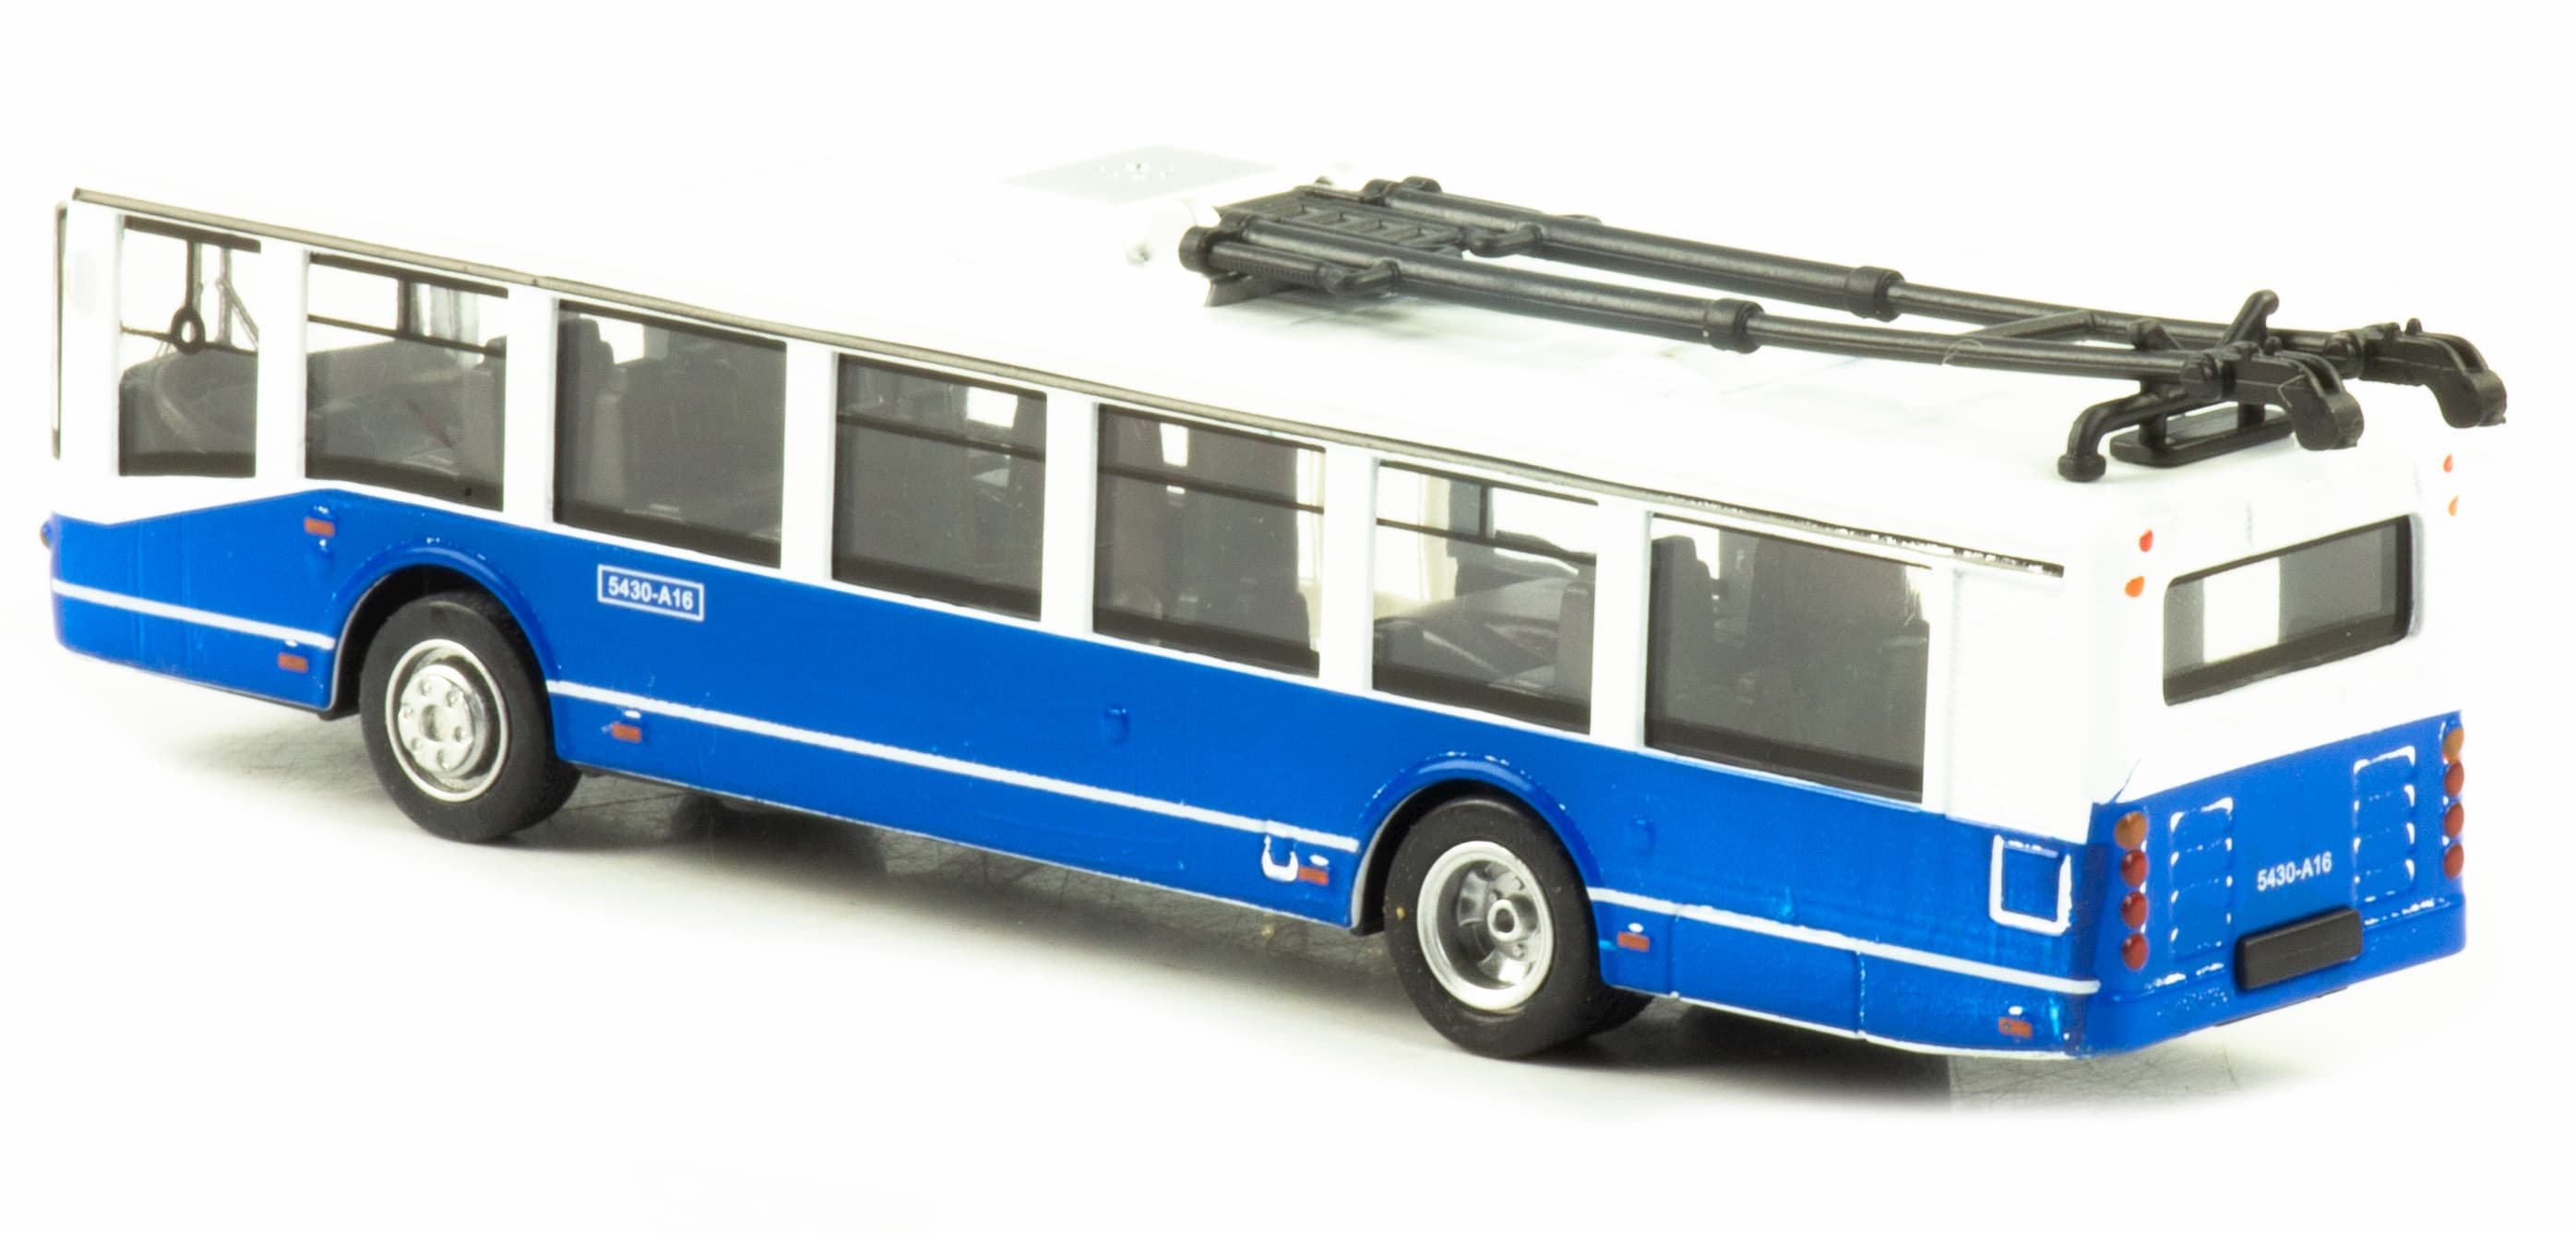 Металлический троллейбус 1:32 «ЛиАЗ 5430-А16» 17 см. 1811-12D инерционный, свет, звук / Синий